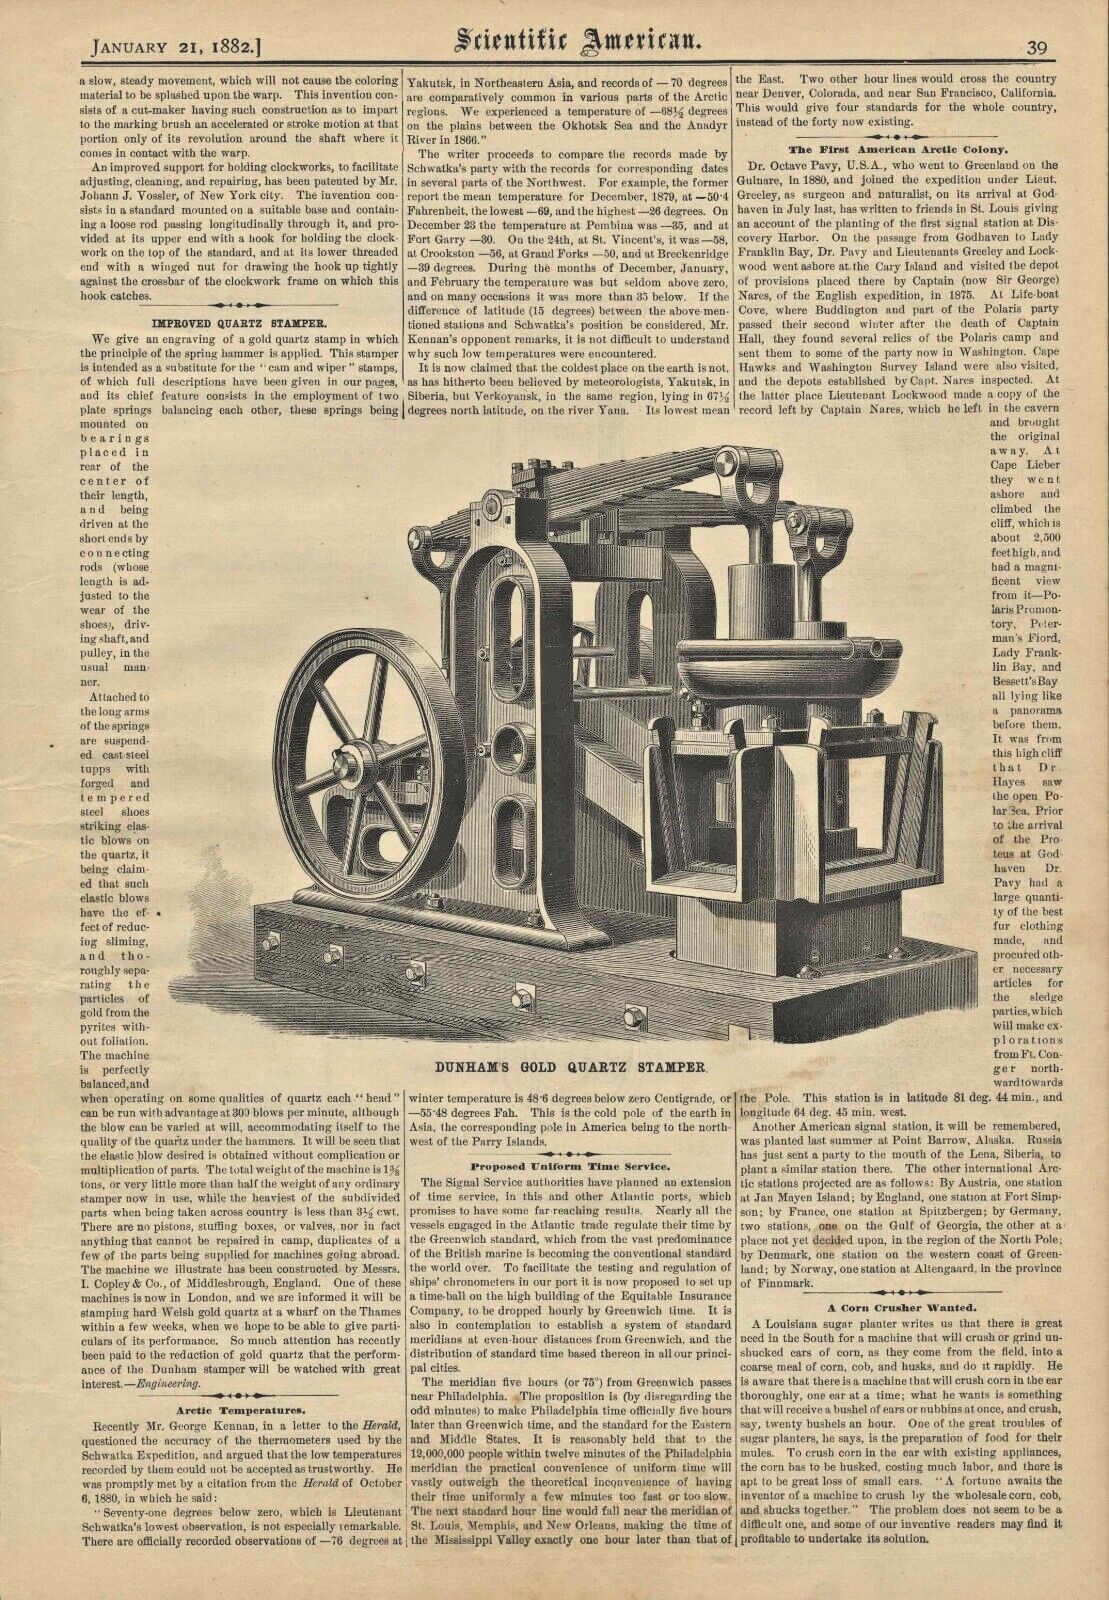 1882 Gold Quartz Stamper Dunham Old Engraving Illustrated Article Scientific Am